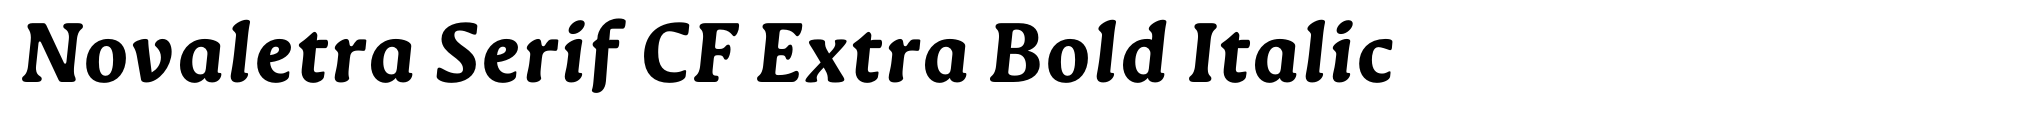 Novaletra Serif CF Extra Bold Italic image